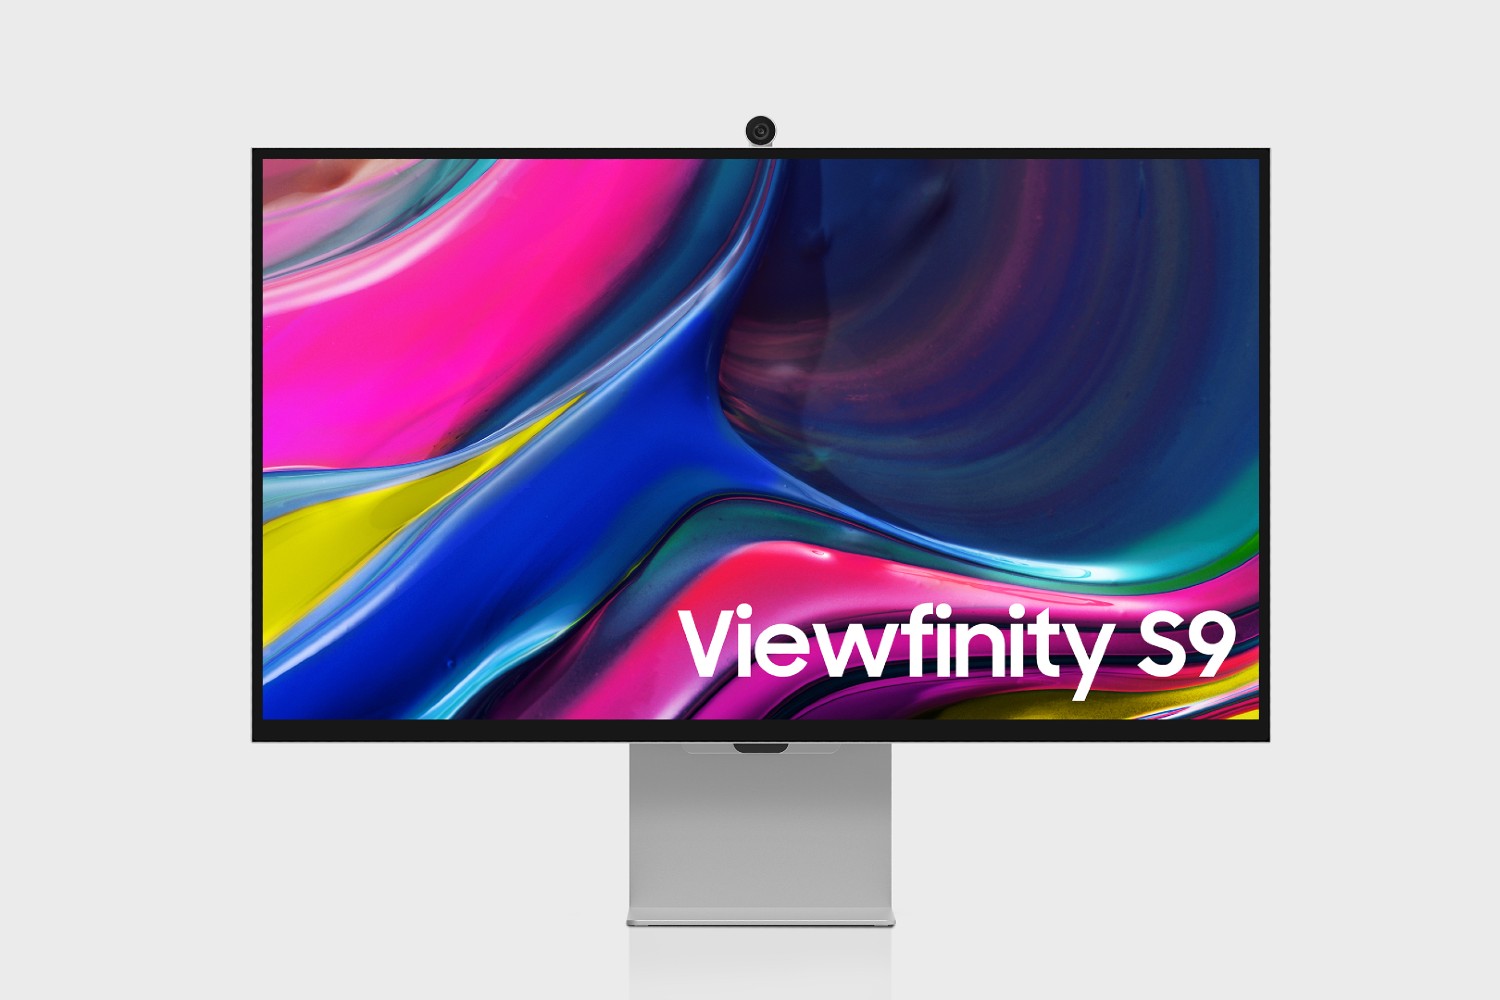 O monitor Samsung Viewfinity S9 com sua webcam no topo.